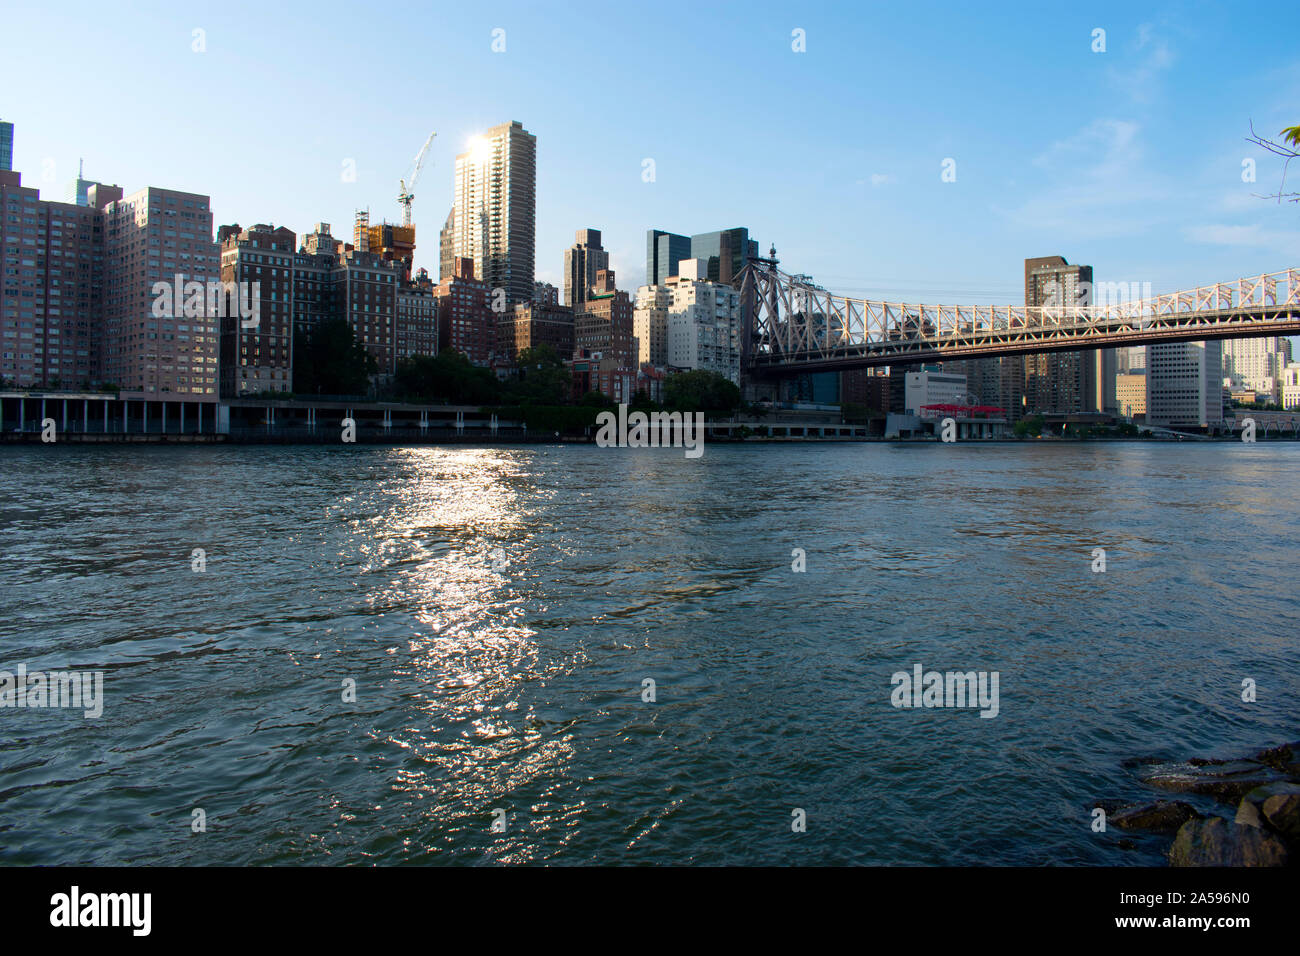 Blick auf die Skyline von Manhattan, New York City Skyline, von Roosevelt Island-10 des East River. Stockfoto